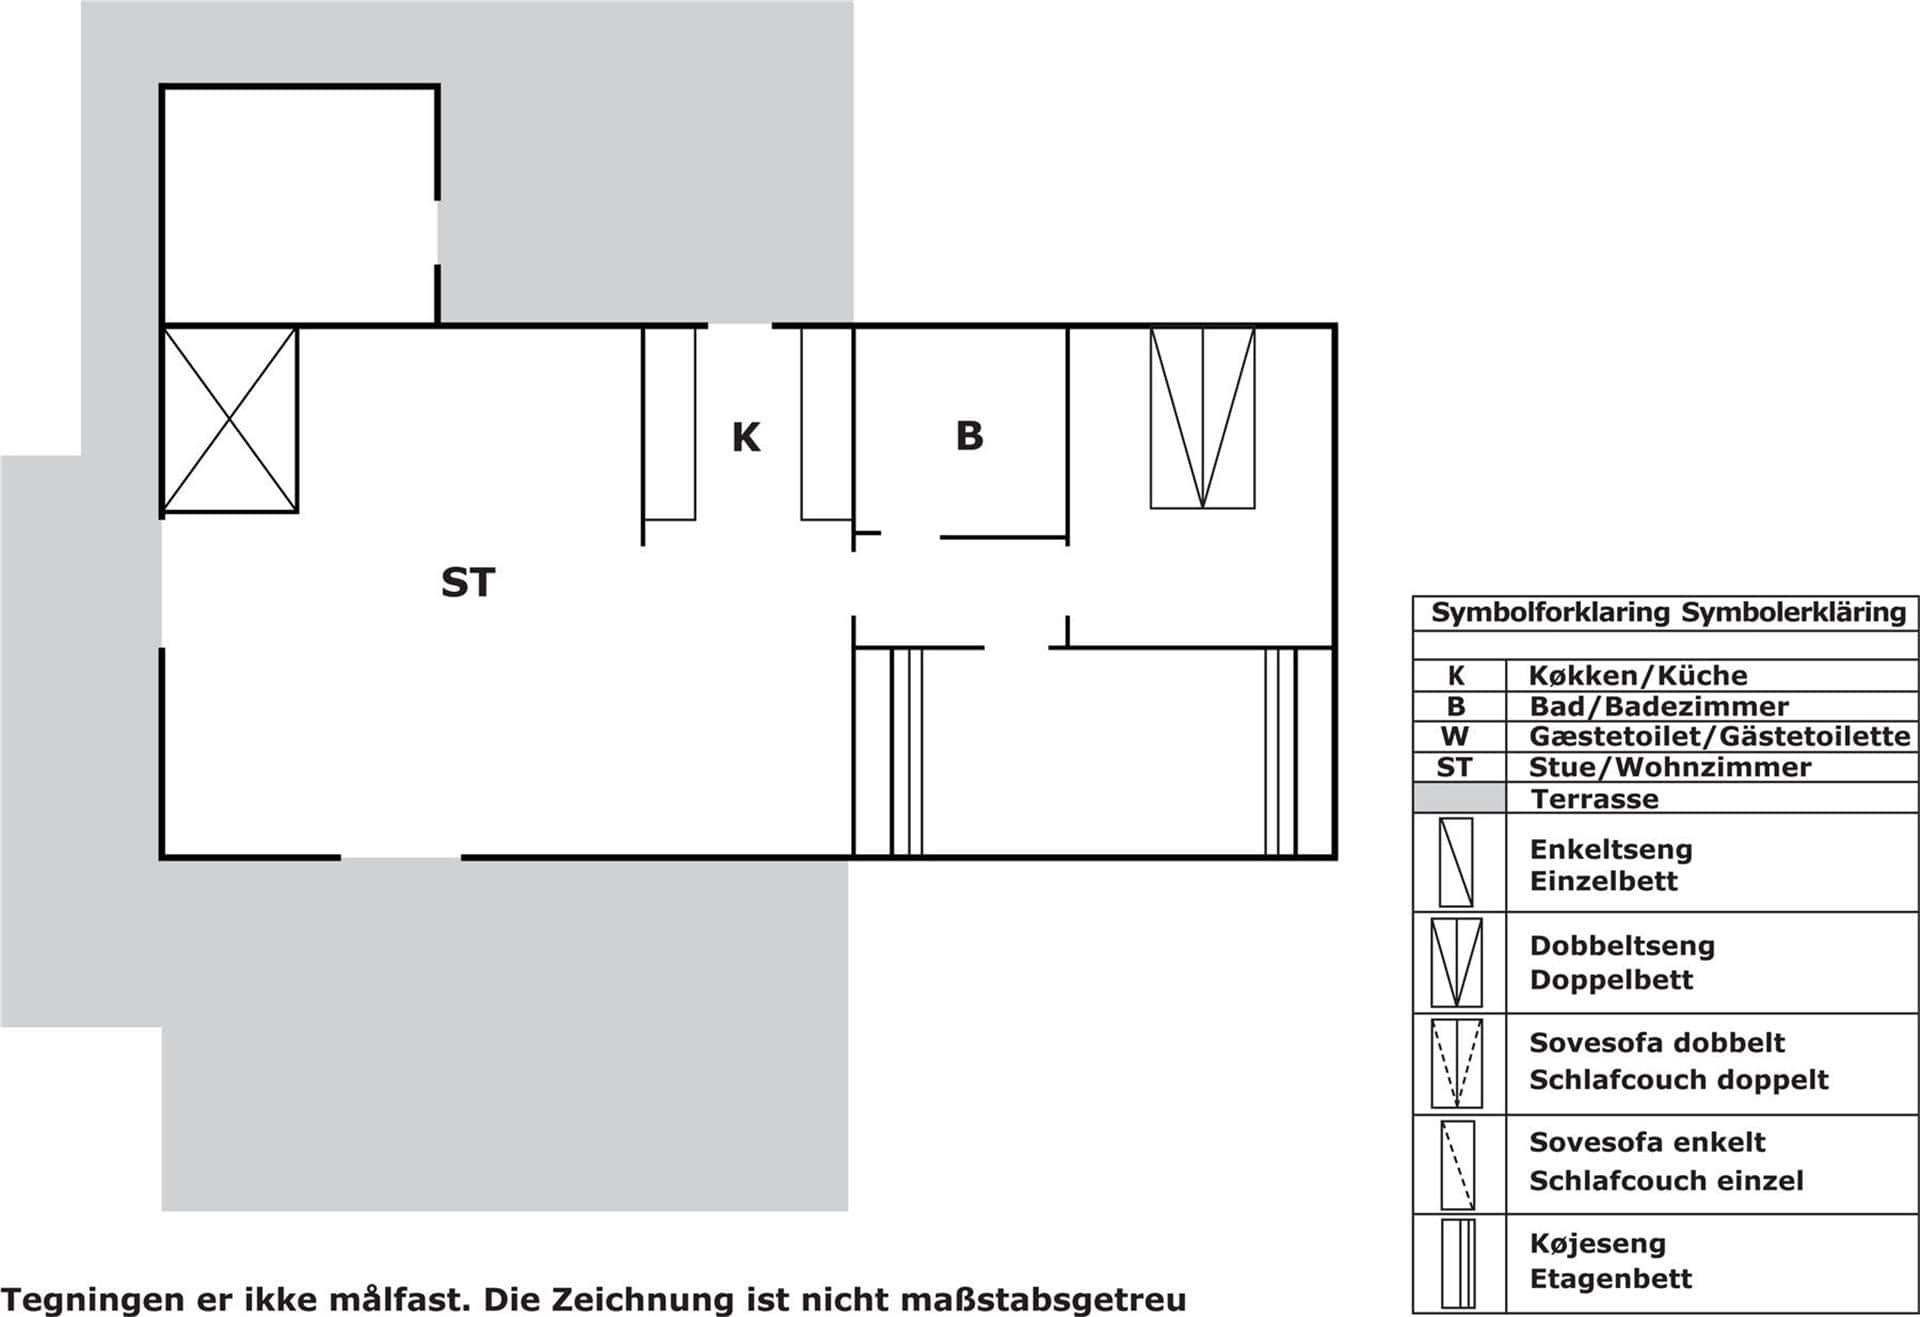 Interieur 2-3 Vakantiehuis M65299, Birkholmvej 2, DK - 5600 Faaborg